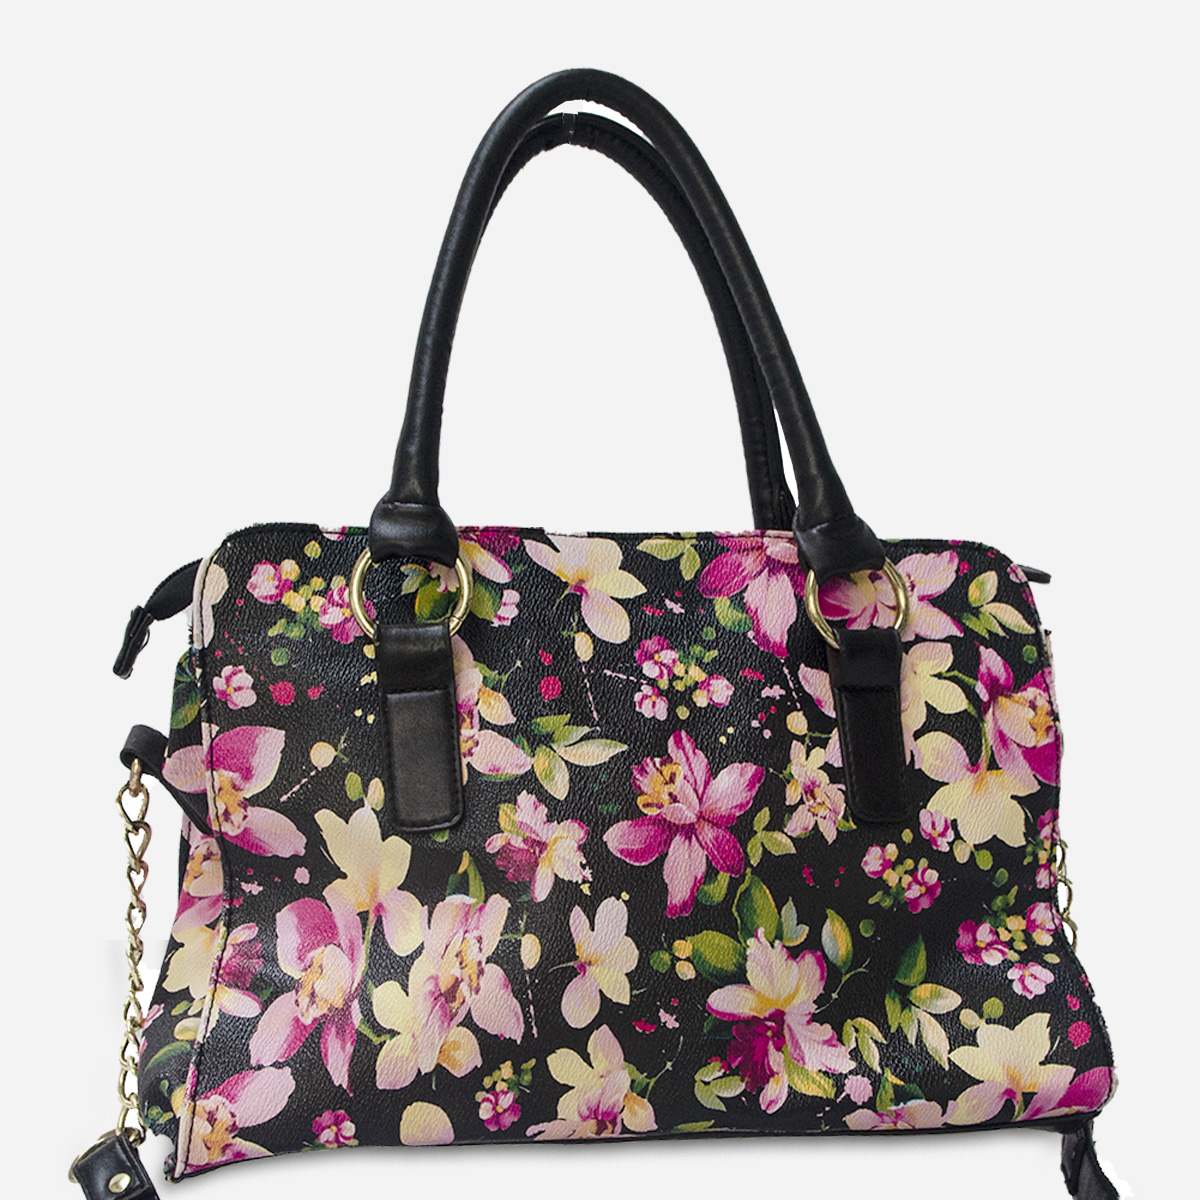 Large floral handbag